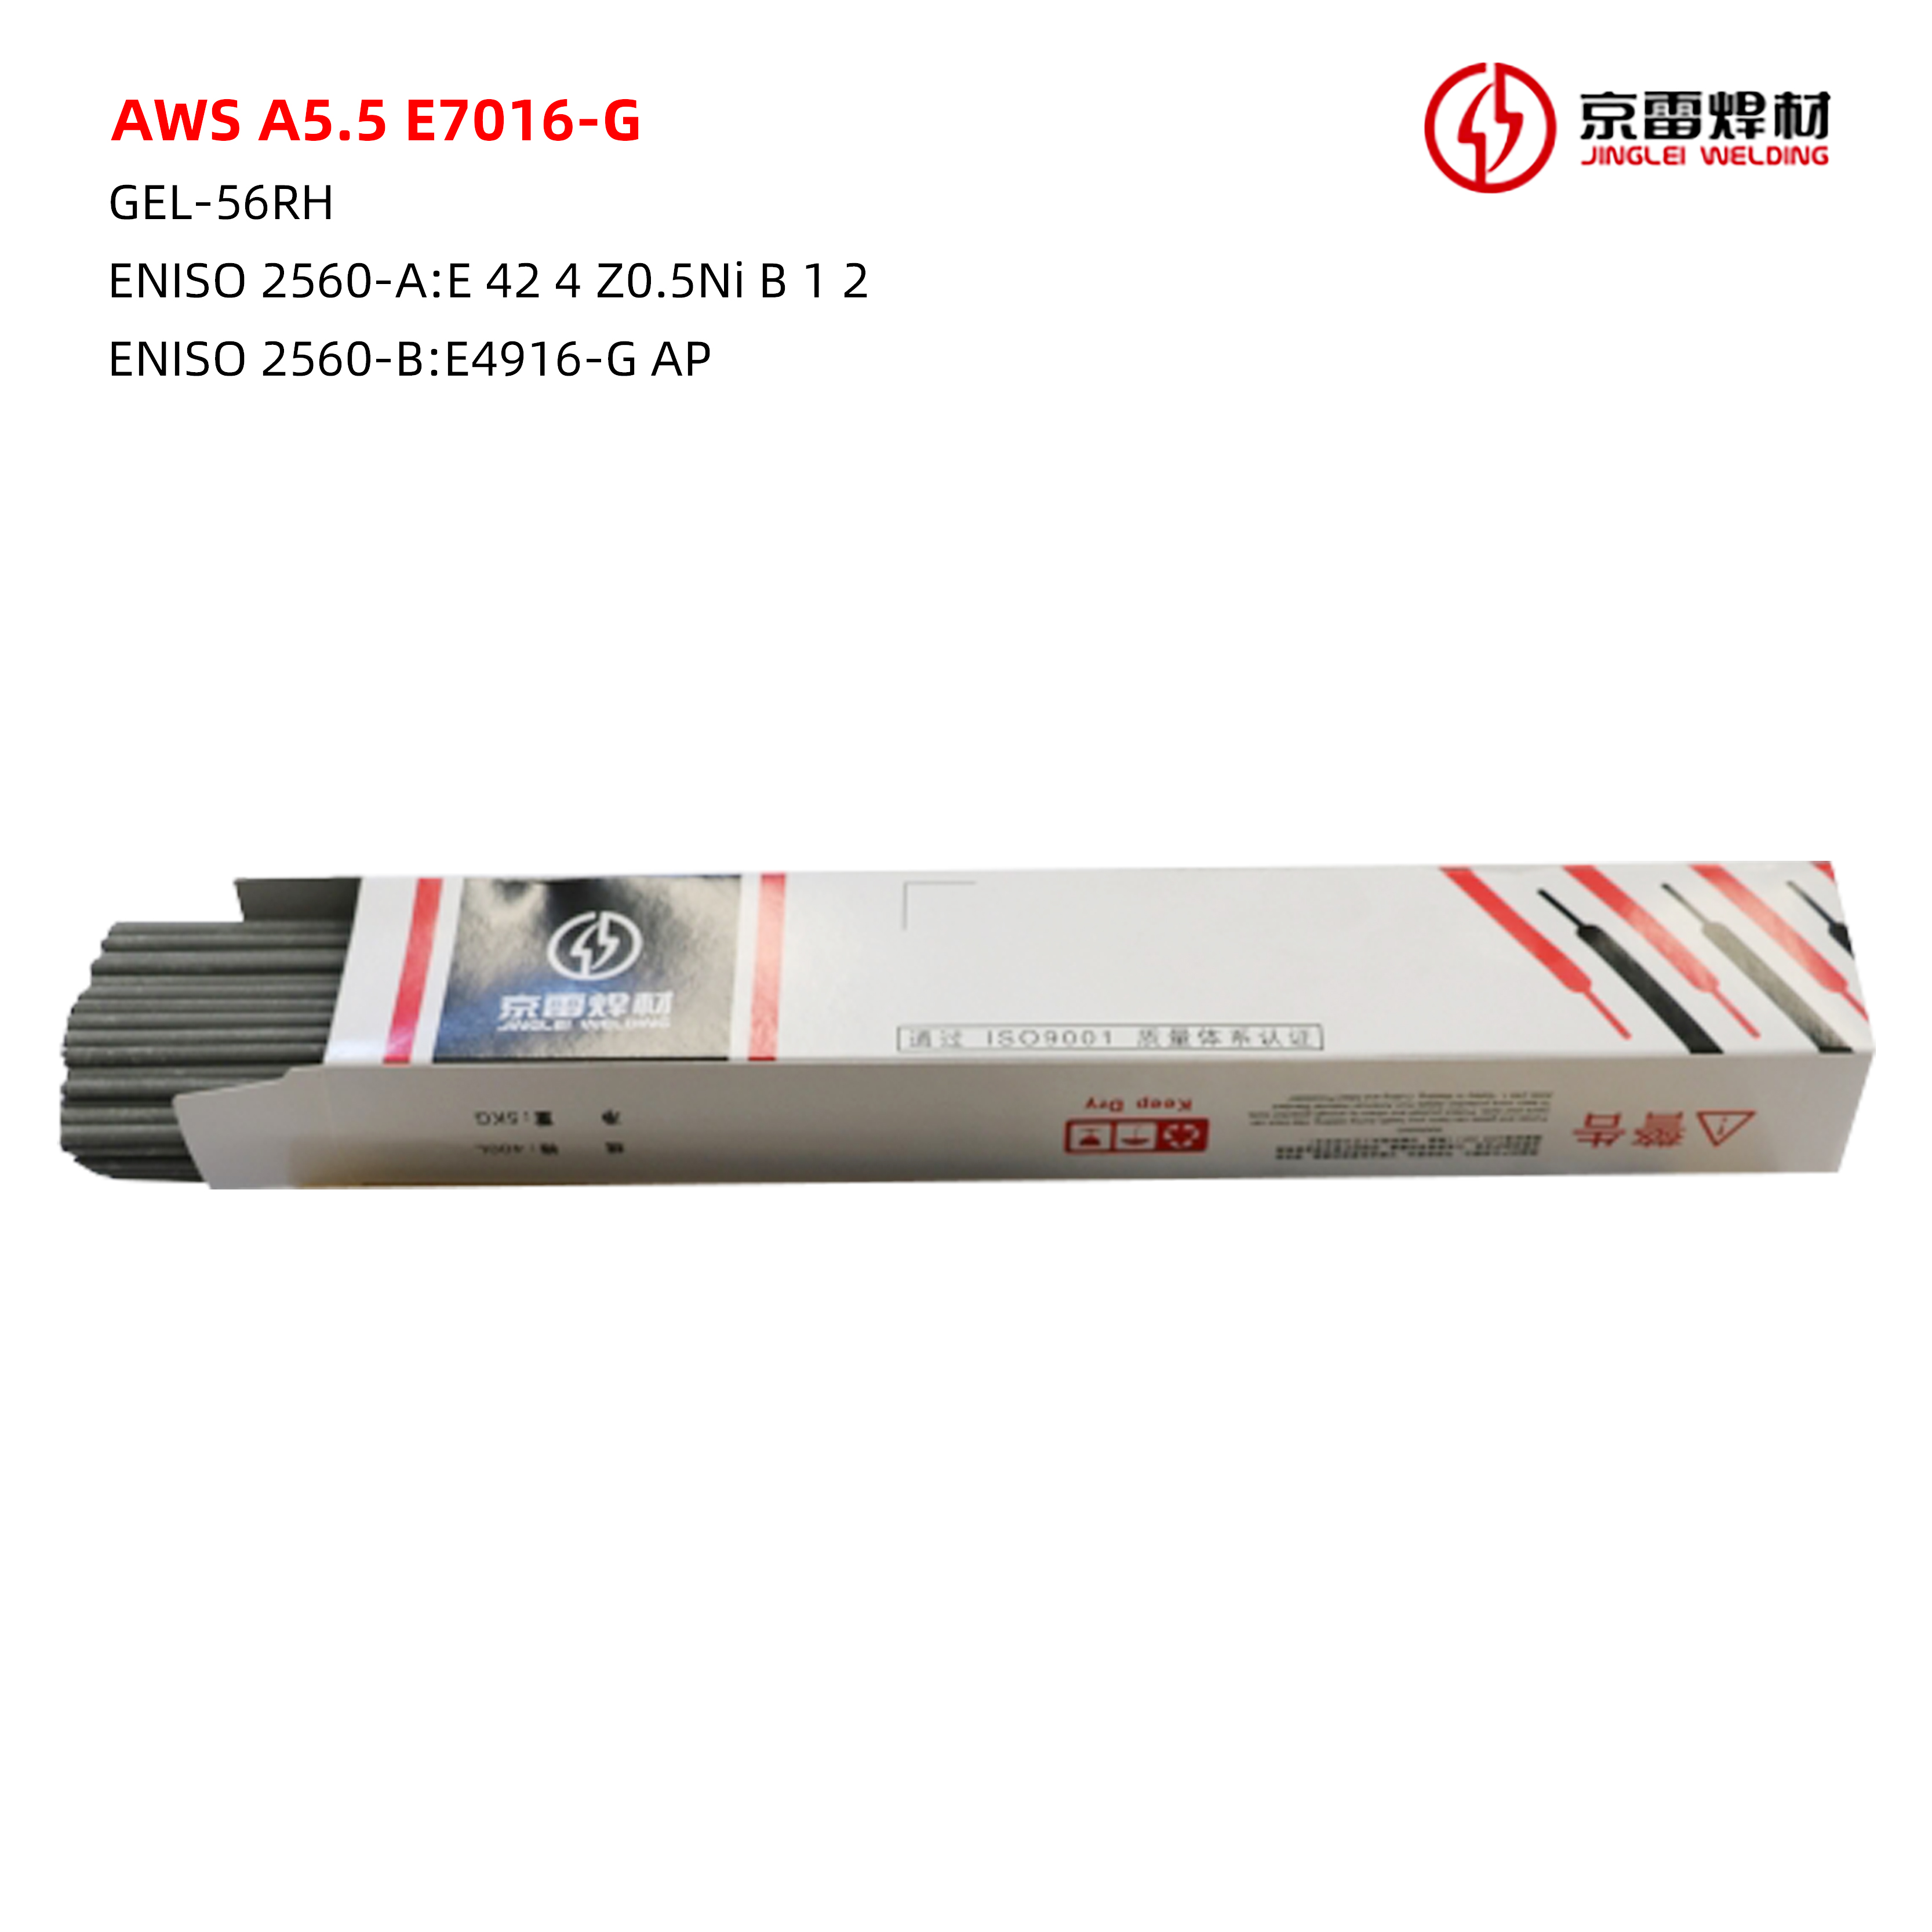 AWS A5.5 E7016-G 01